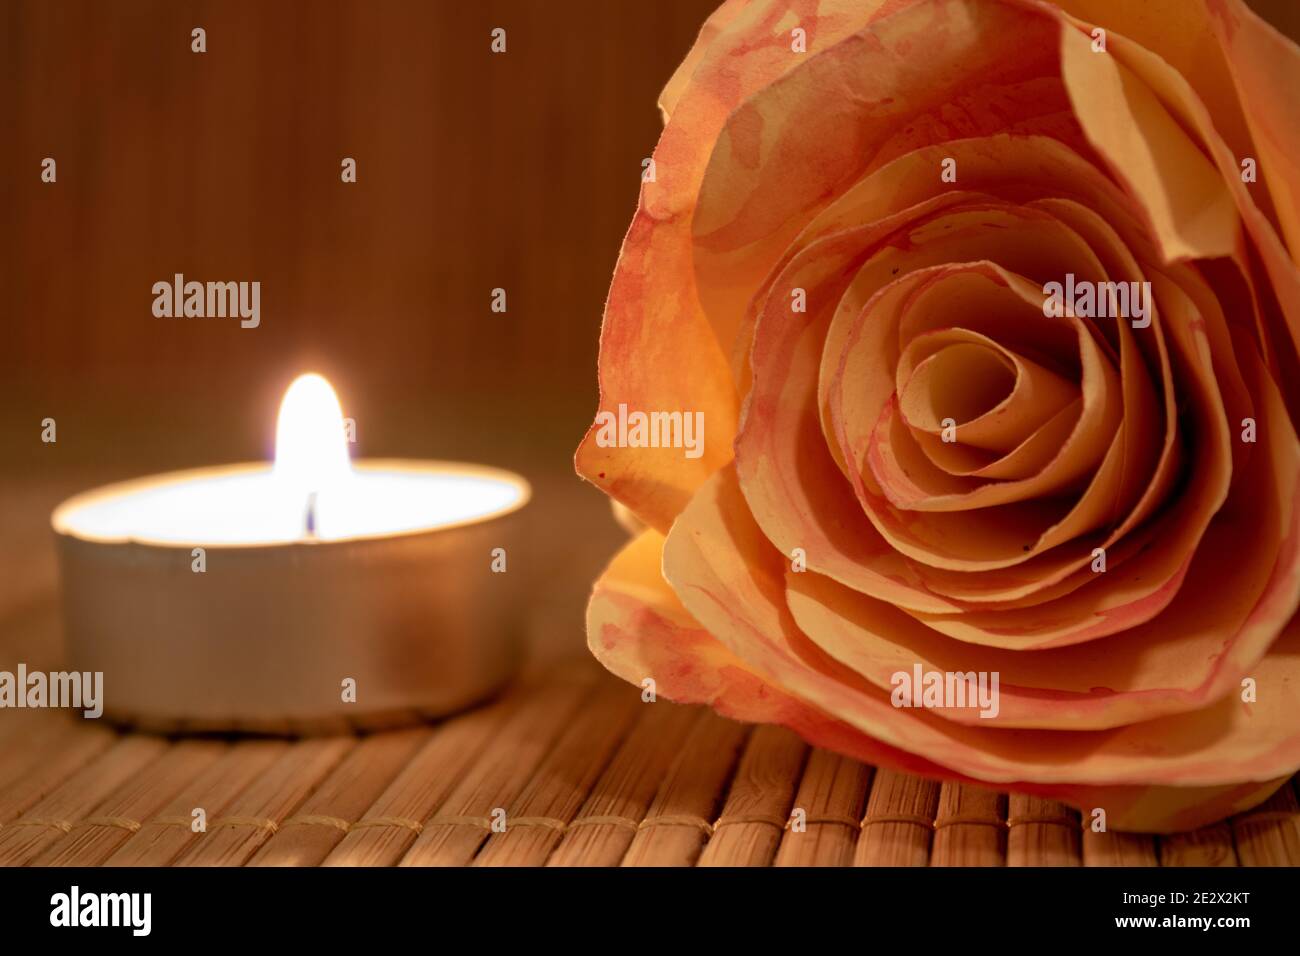 Rosenblüte und brennende Kerze. Rosenblüte aus Papier mit Teelicht auf  Holztisch mit Kopierfläche liegend. Romantisches Konzept Stockfotografie -  Alamy